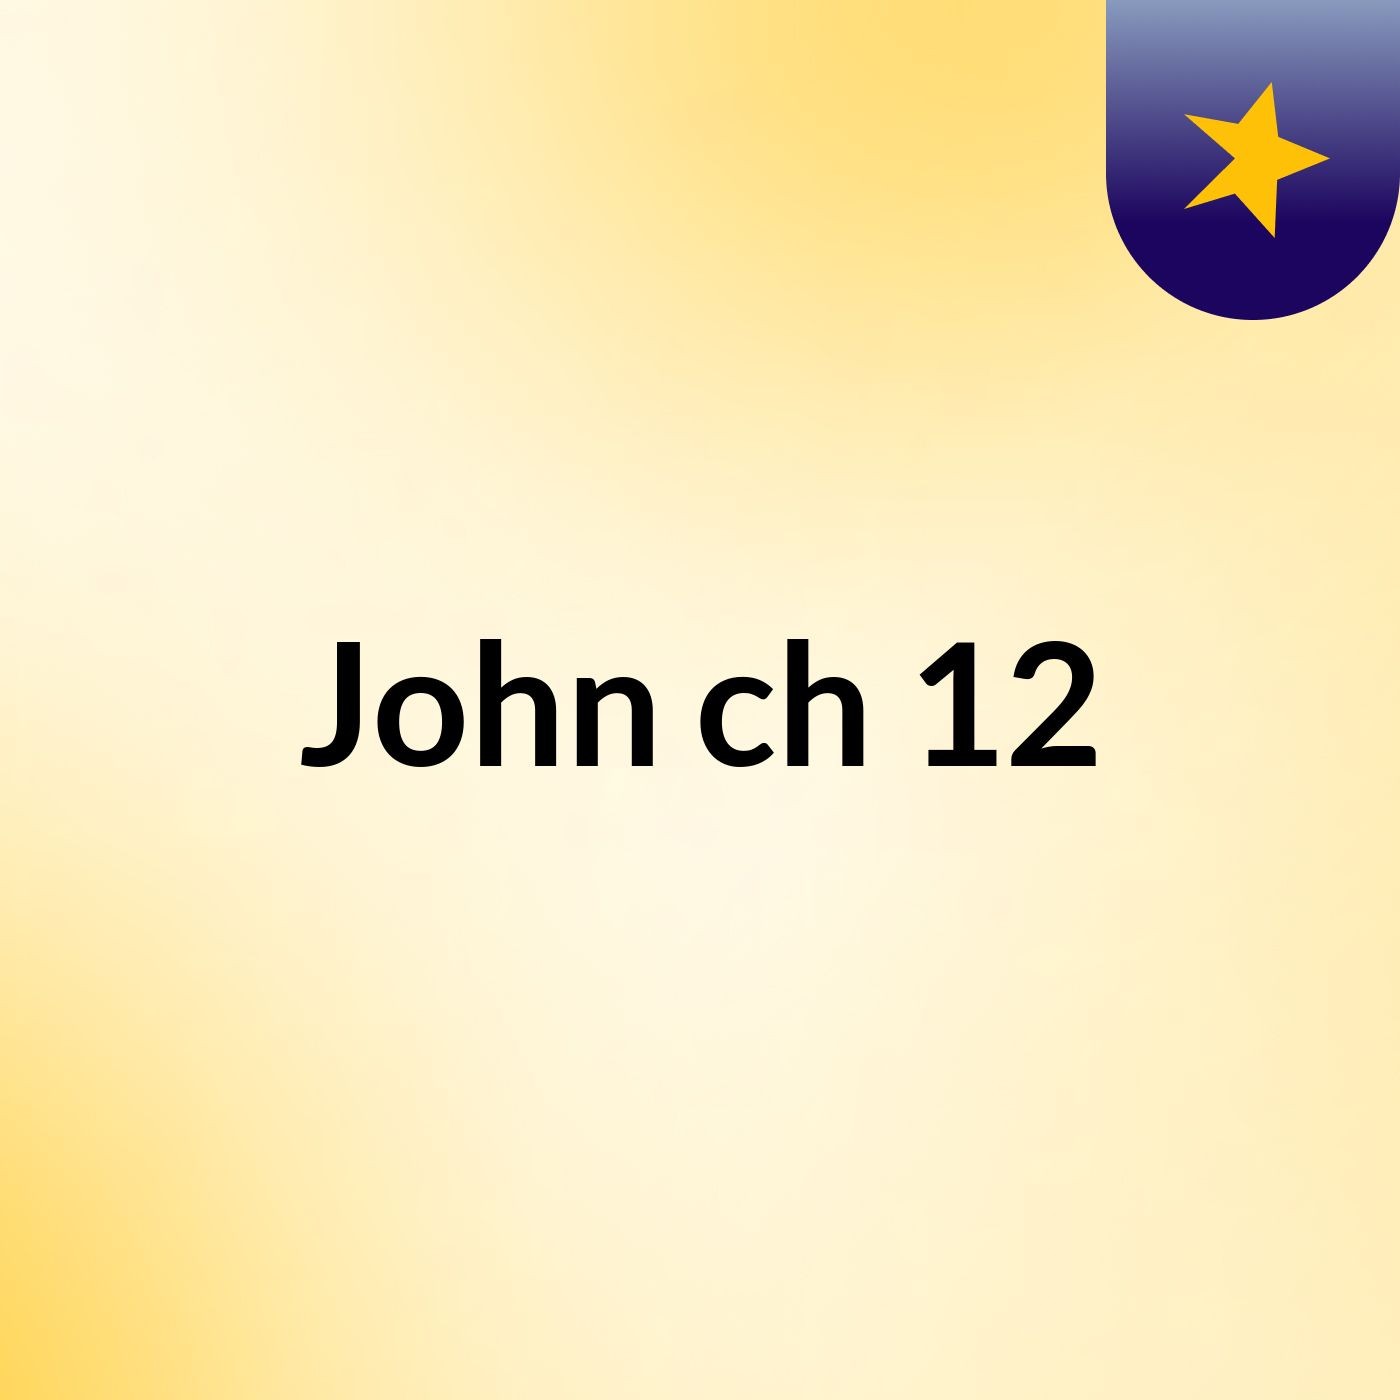 John ch 12